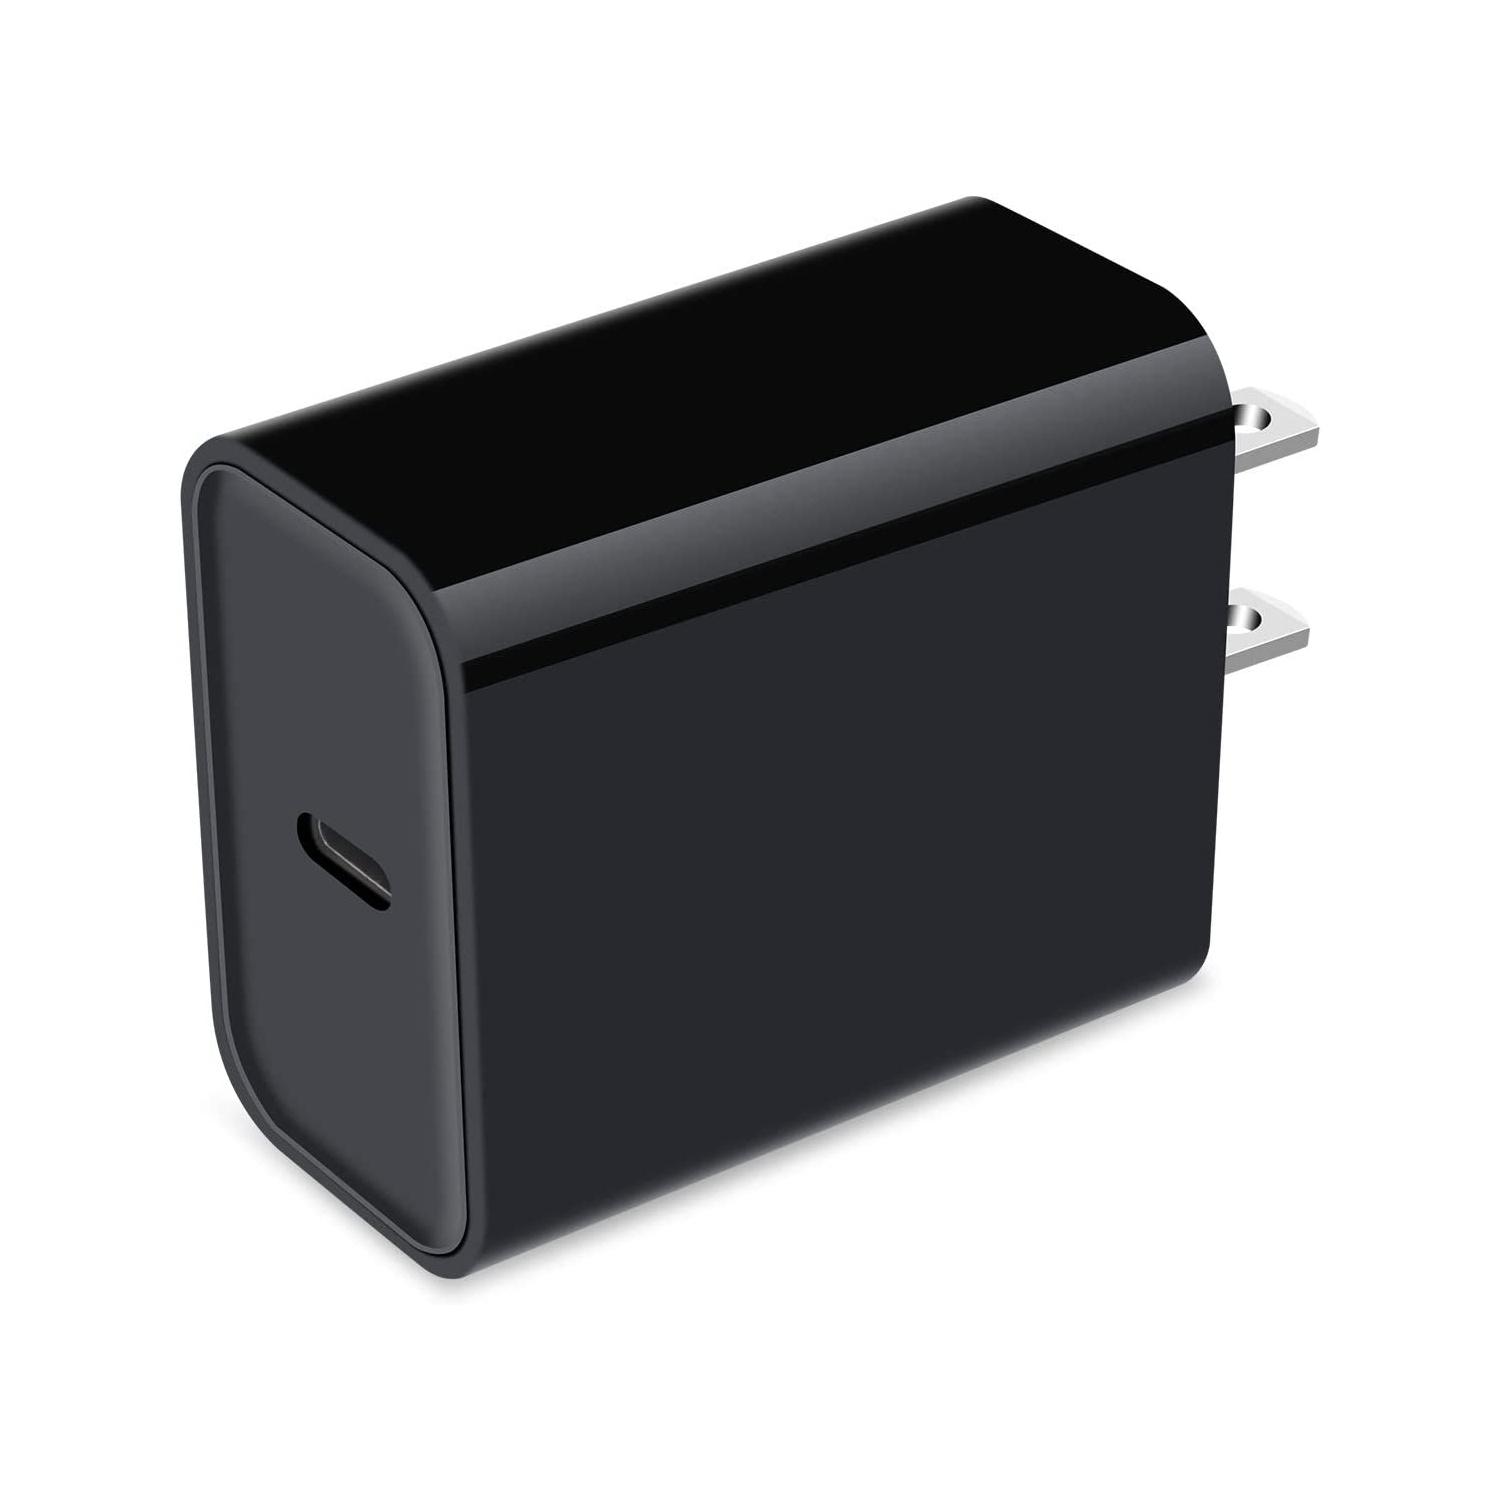 20W USB C Wall Plug Fast Charging Type C, Power Adapter for Apple-iPhone 13 12 11 Pro Max Mini XS XR X 8, iPad, Samsung Galaxy -Black